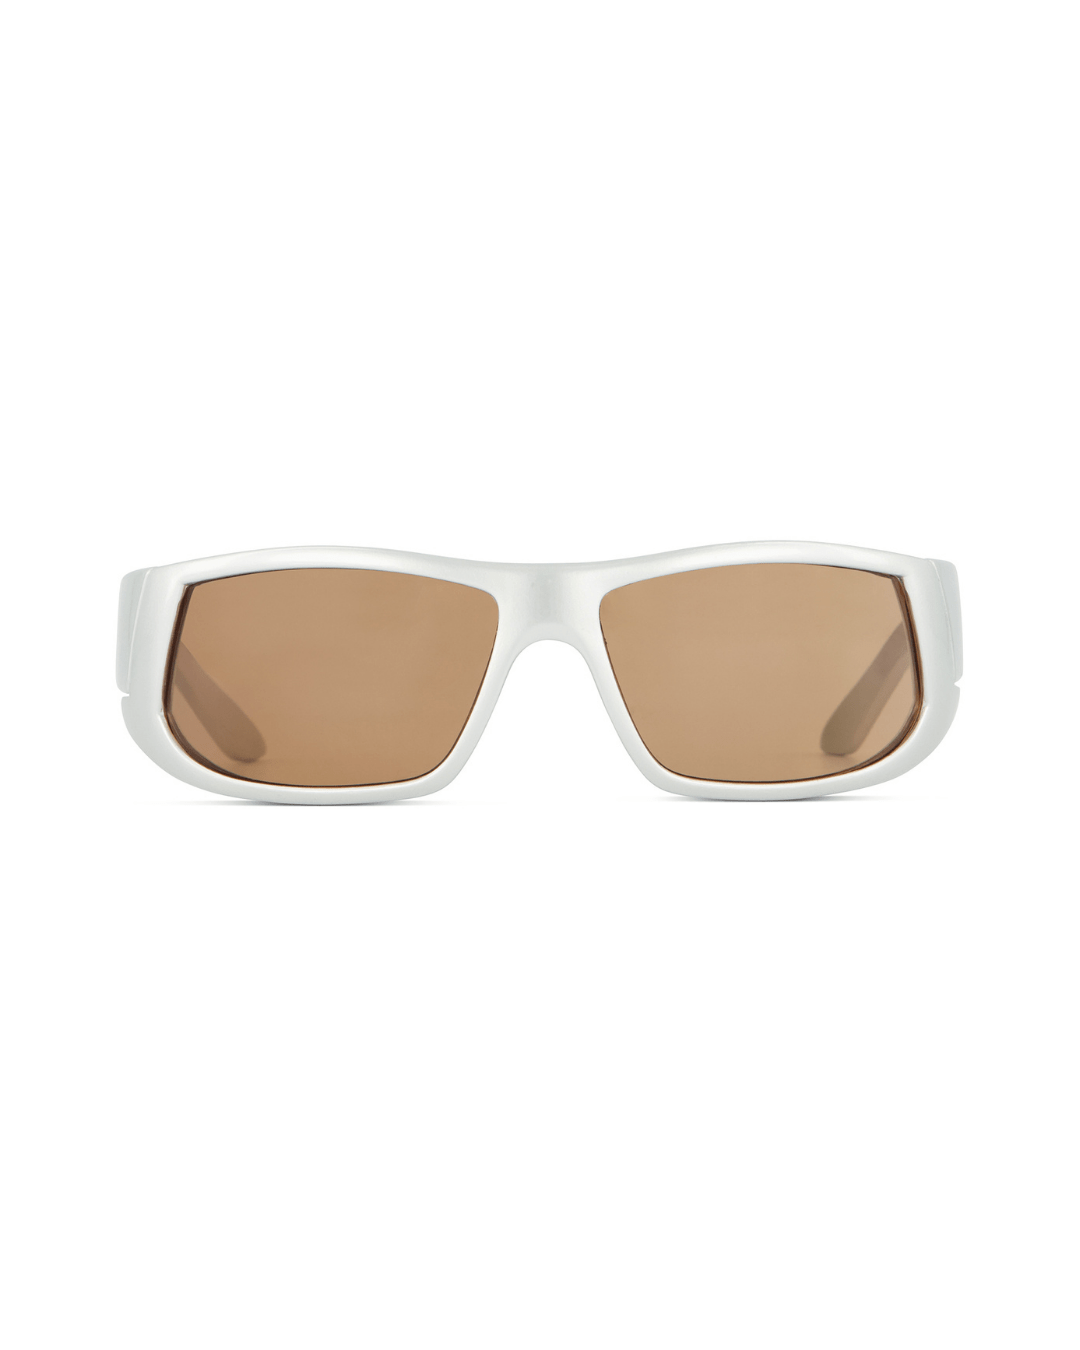 Silver Sport Shield Sunglasses - American Deadstock